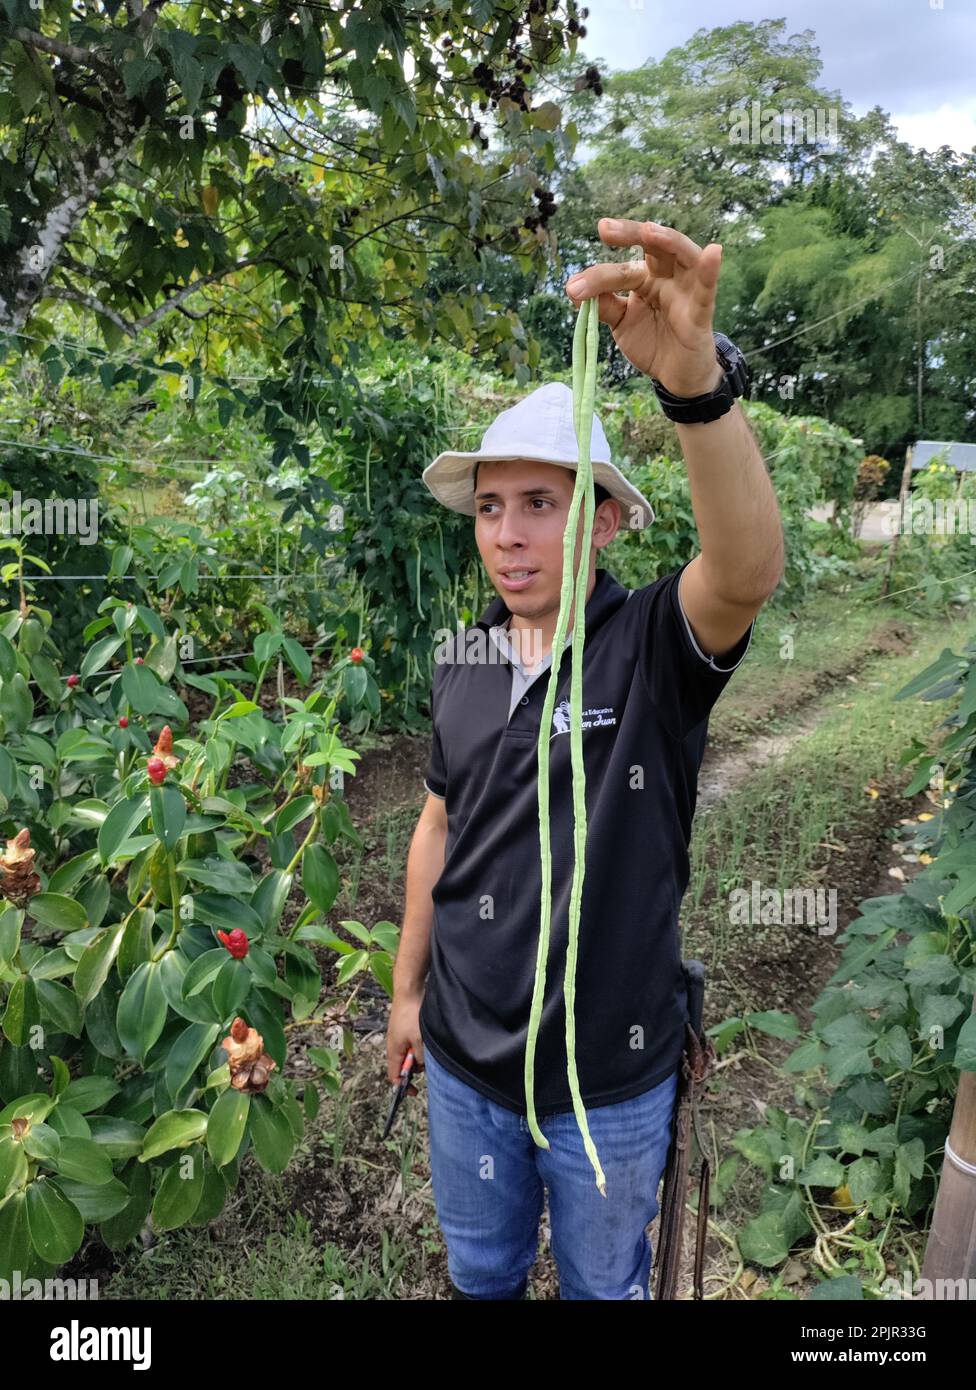 La Fortuna, Costa Rica - Ein Reiseleiter an der Finca Educativa Don Juan (Don Juan Educational Farm) erläutert die Kulturen, die auf dem Bio-Bauernhof angebaut werden. Angebaute Pflanzen o Stockfoto